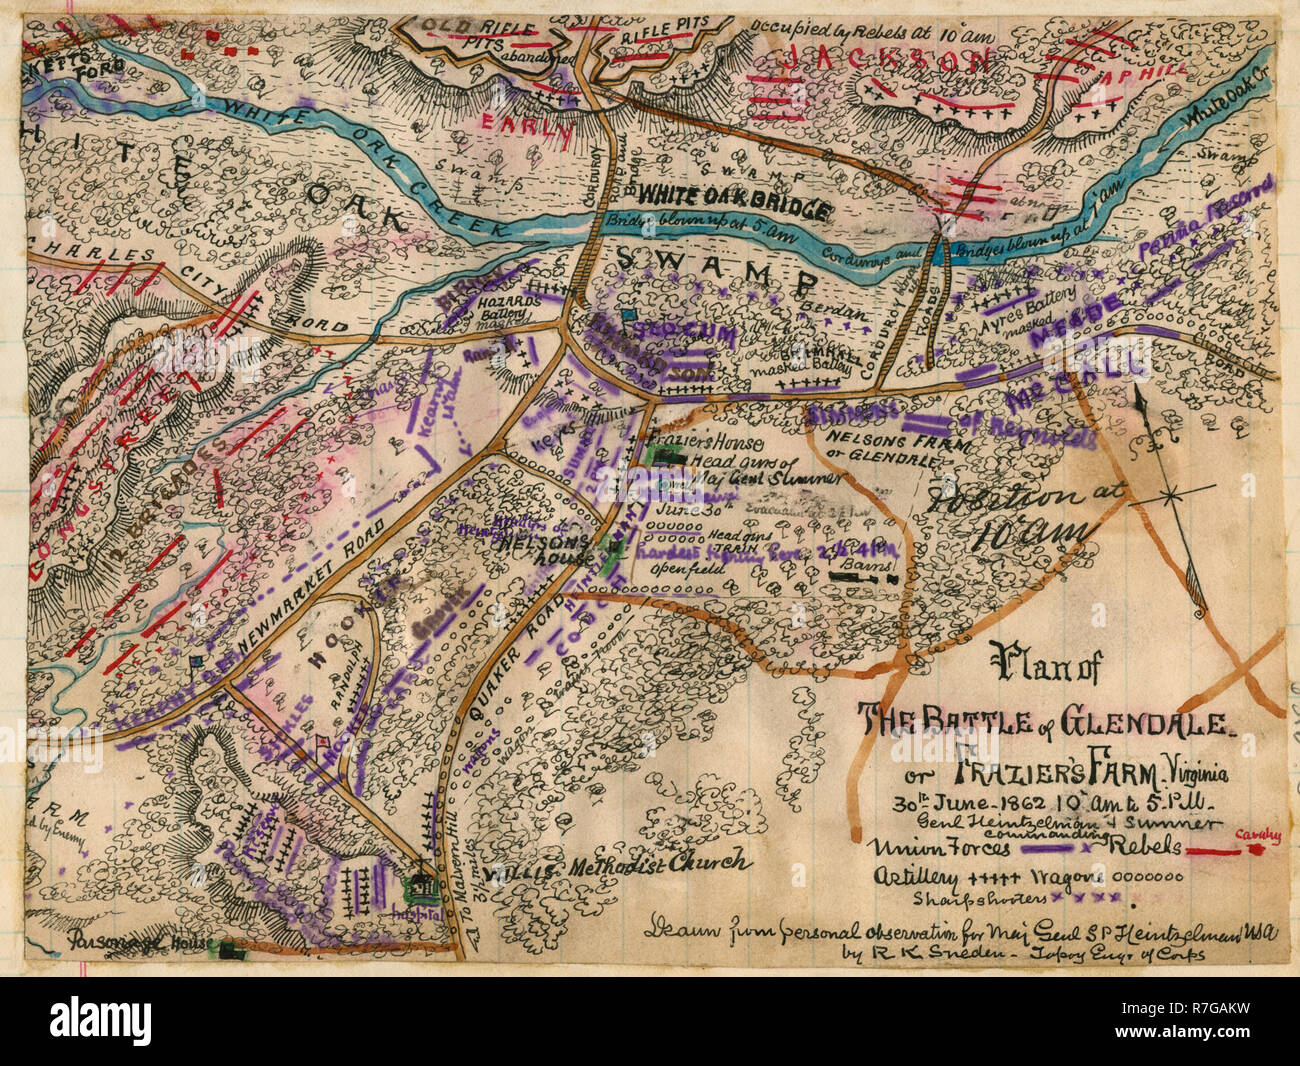 Piano di battaglia di Glendale o Frazier's Farm. Virginia. 30 giugno 1862 10.00 alle 5 p.m. Genl Heintzelman e Sumner comandare. La guerra civile americana Foto Stock